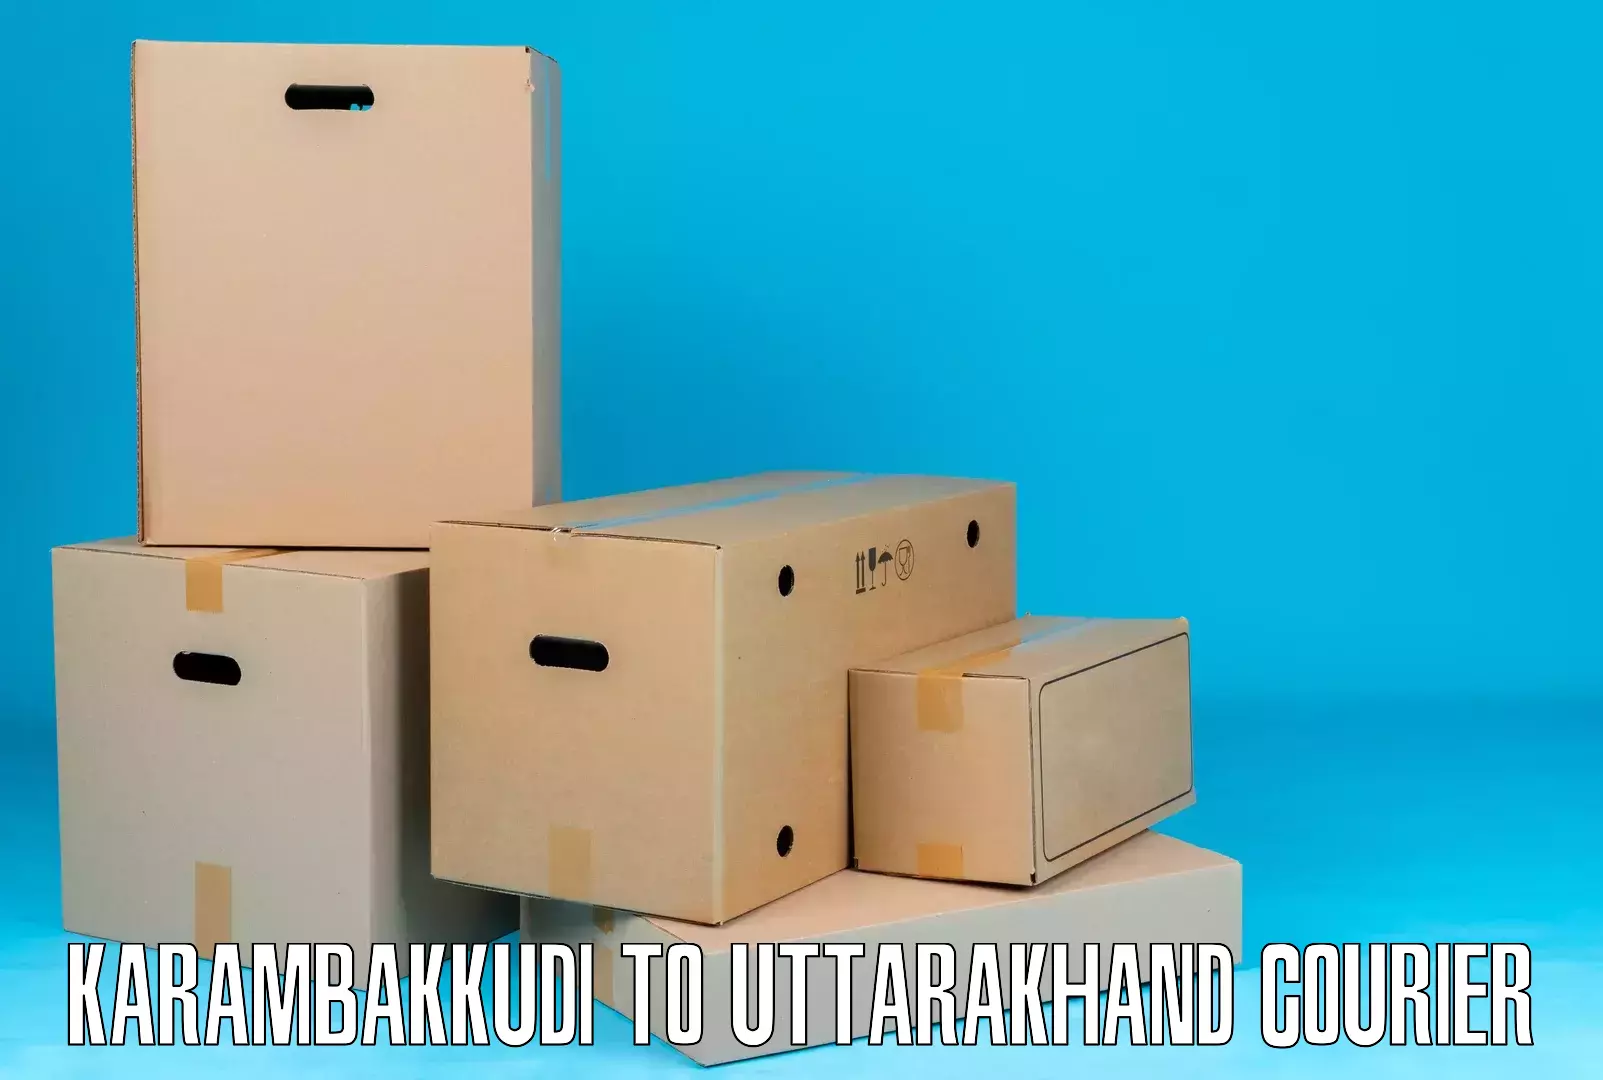 Quality courier partnerships Karambakkudi to Tehri Garhwal